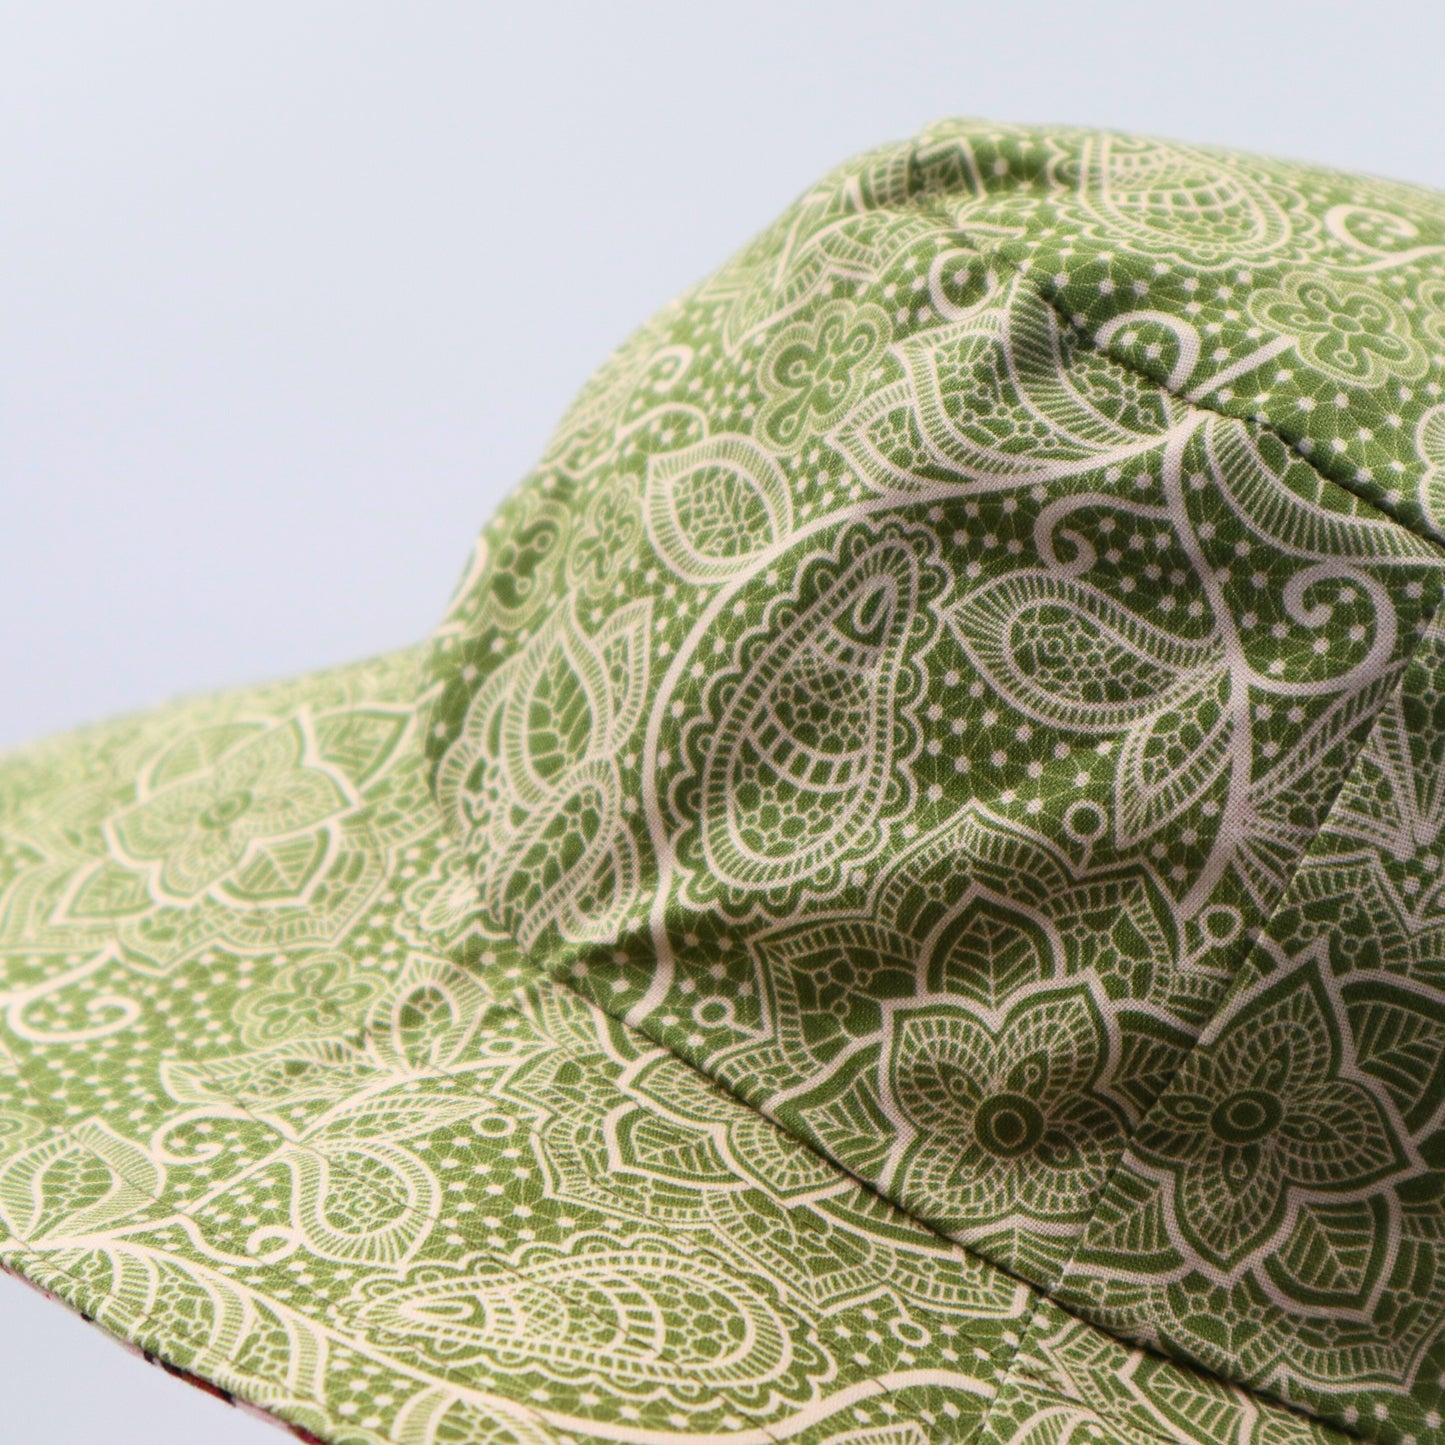 Reversible Sun Hat - Ladies & Girls sizes - green / pink floral